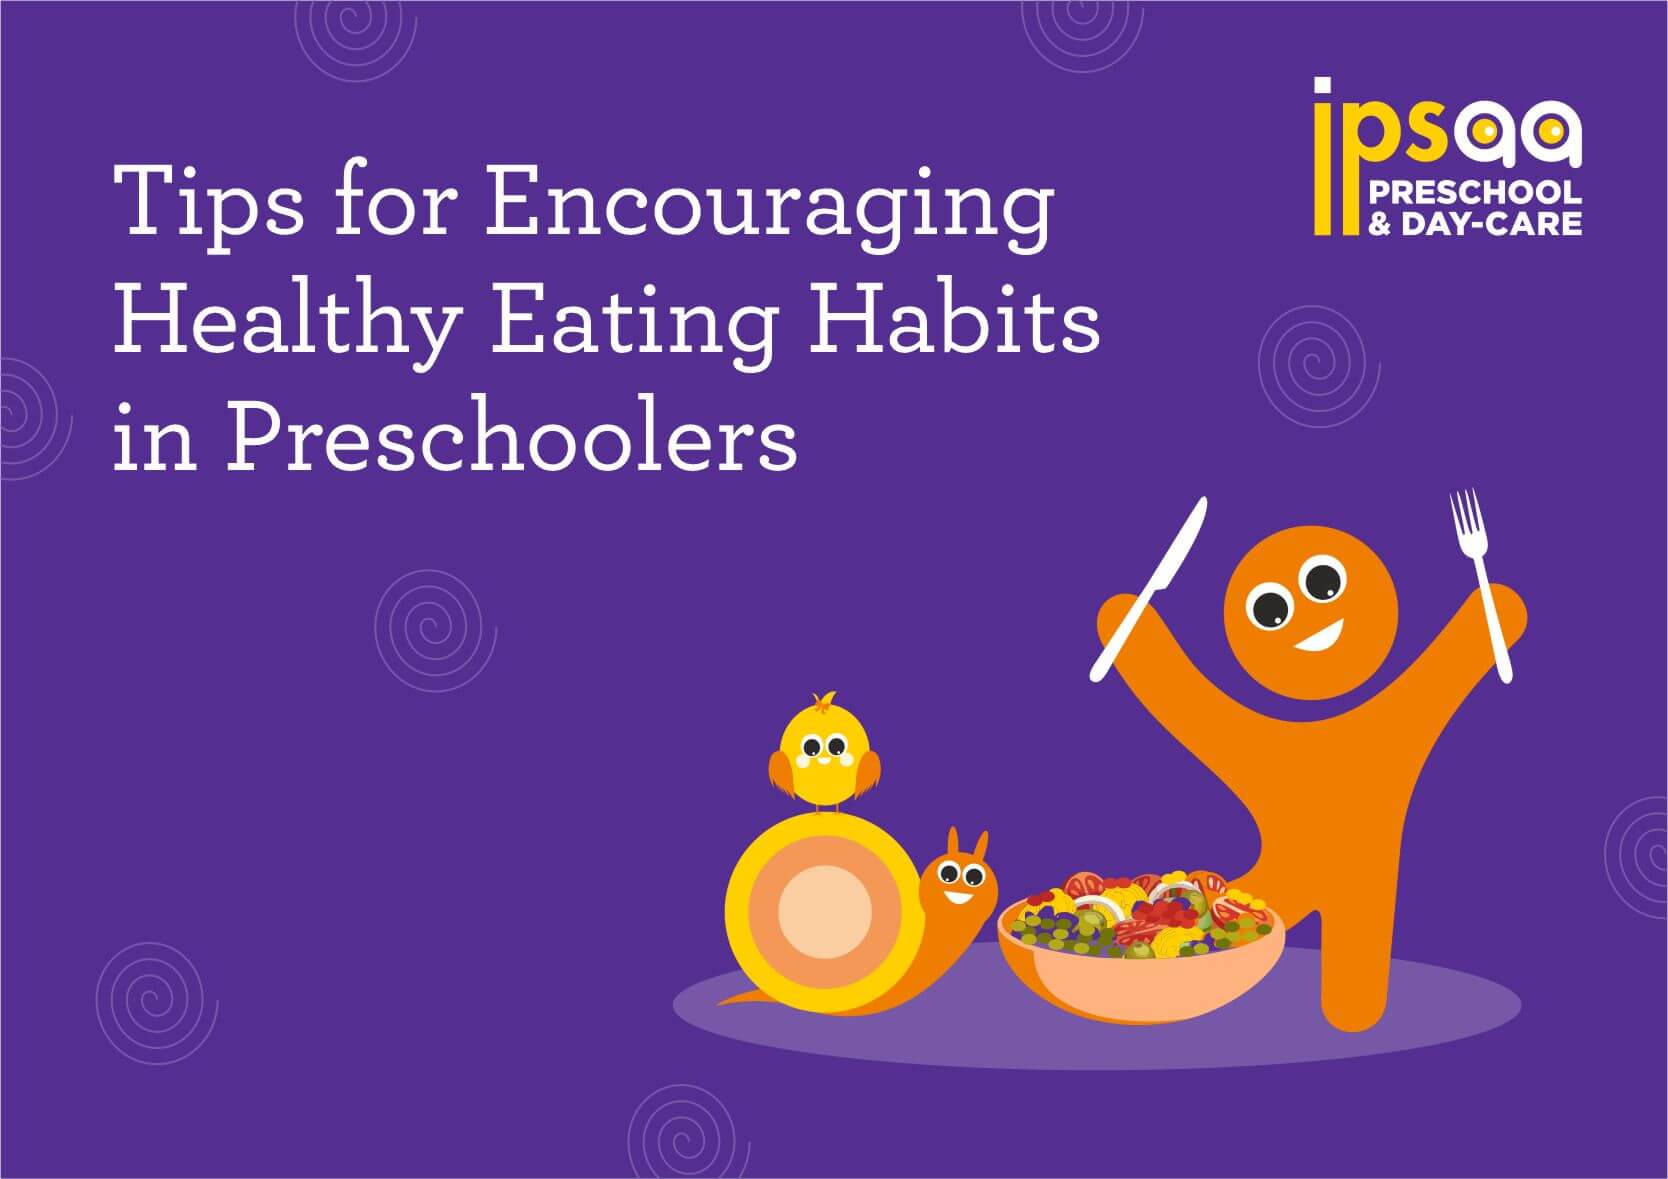 Tips for Encouraging Healthy Eating Habits in Preschool children